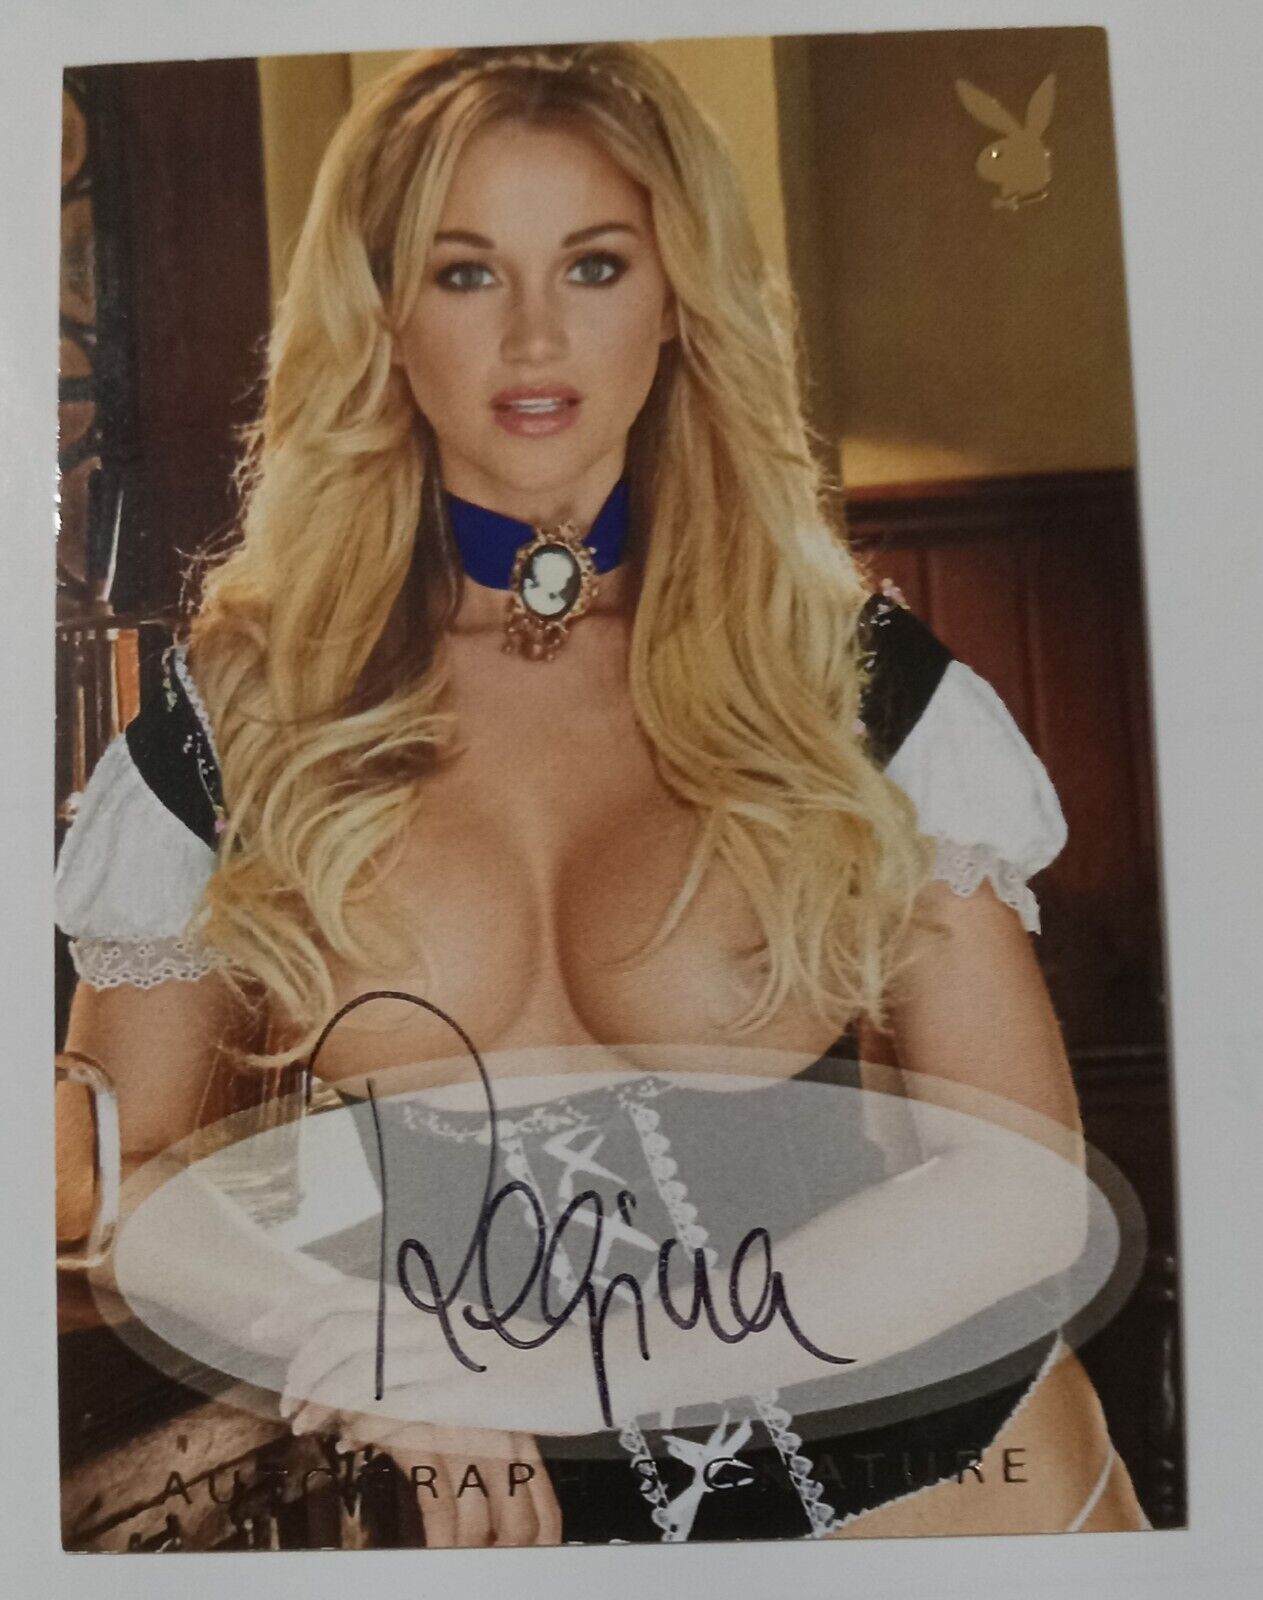 PlayboyPlaymate Regina Deutinger Authentic Autograph Card Vintage 2010